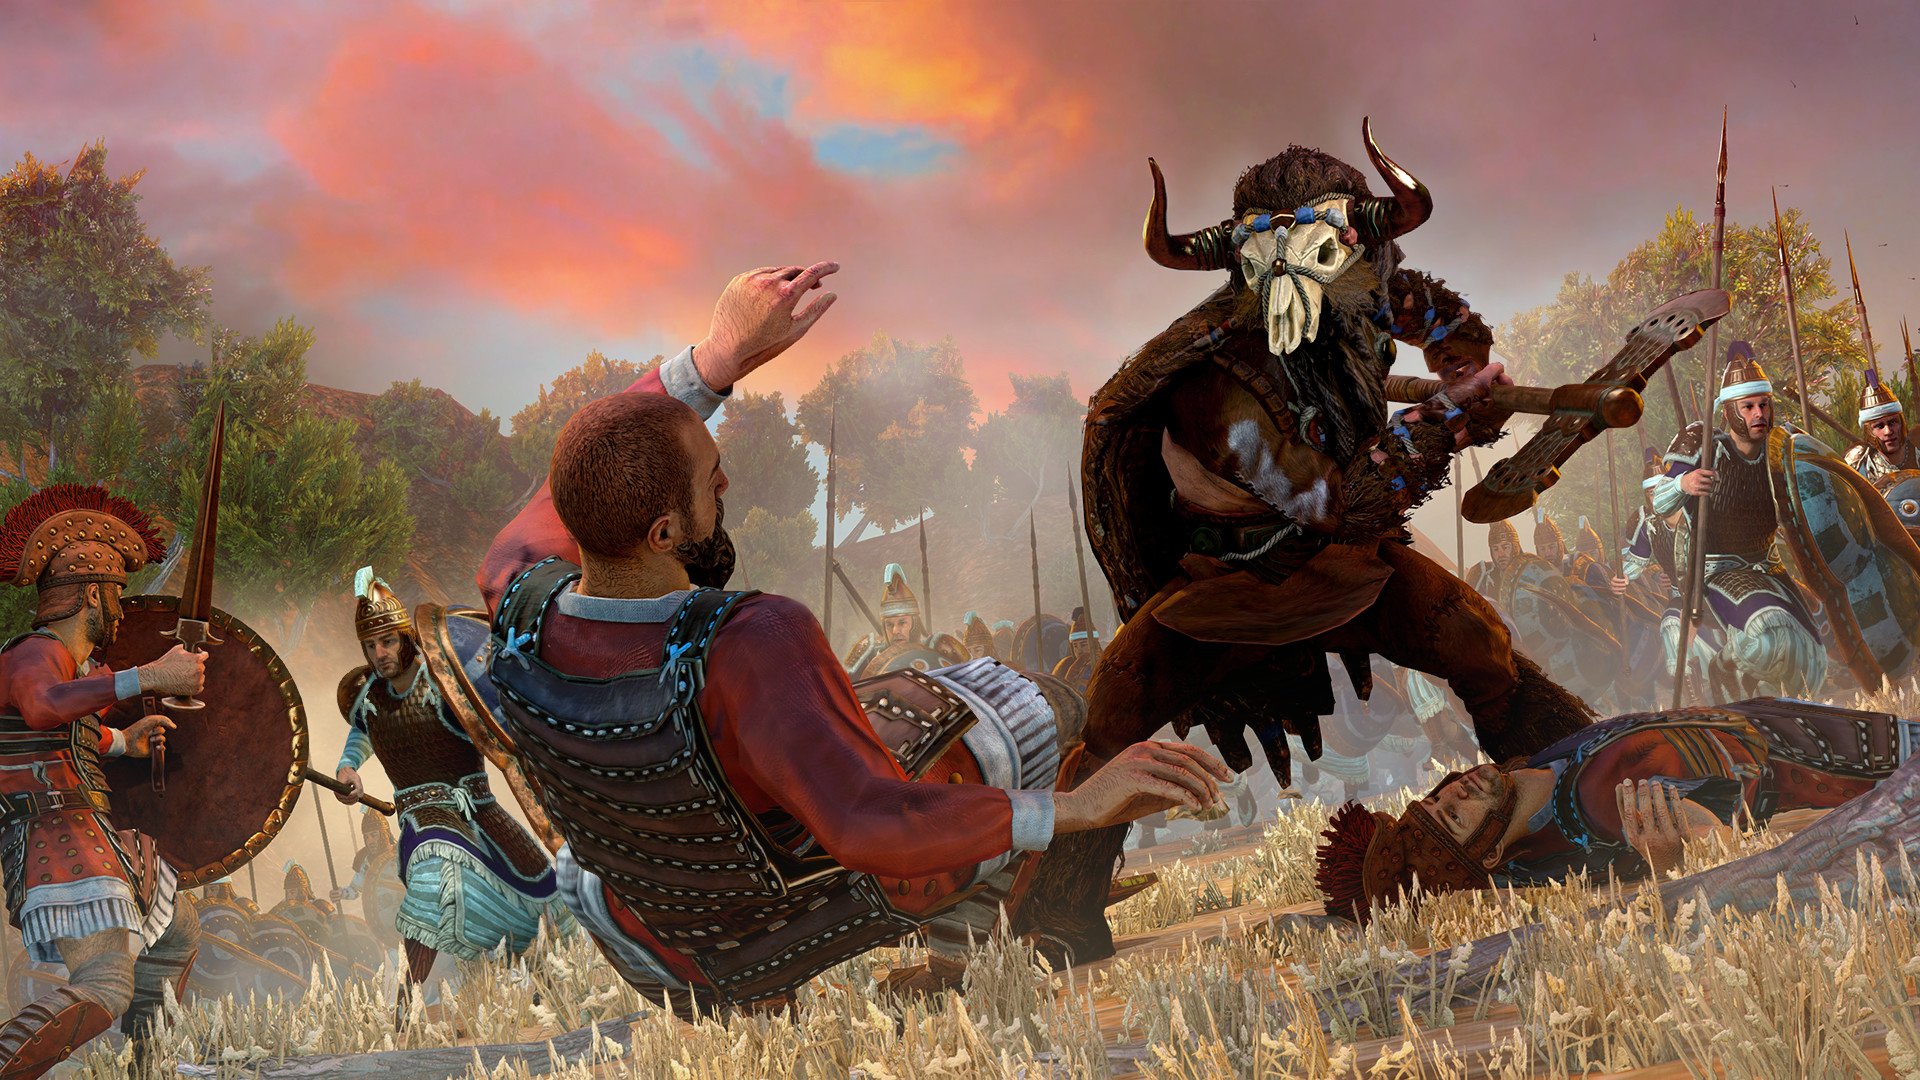 Скриншот 2 к игре Total War Saga: TROY (2020) скачать торрент Лицензия